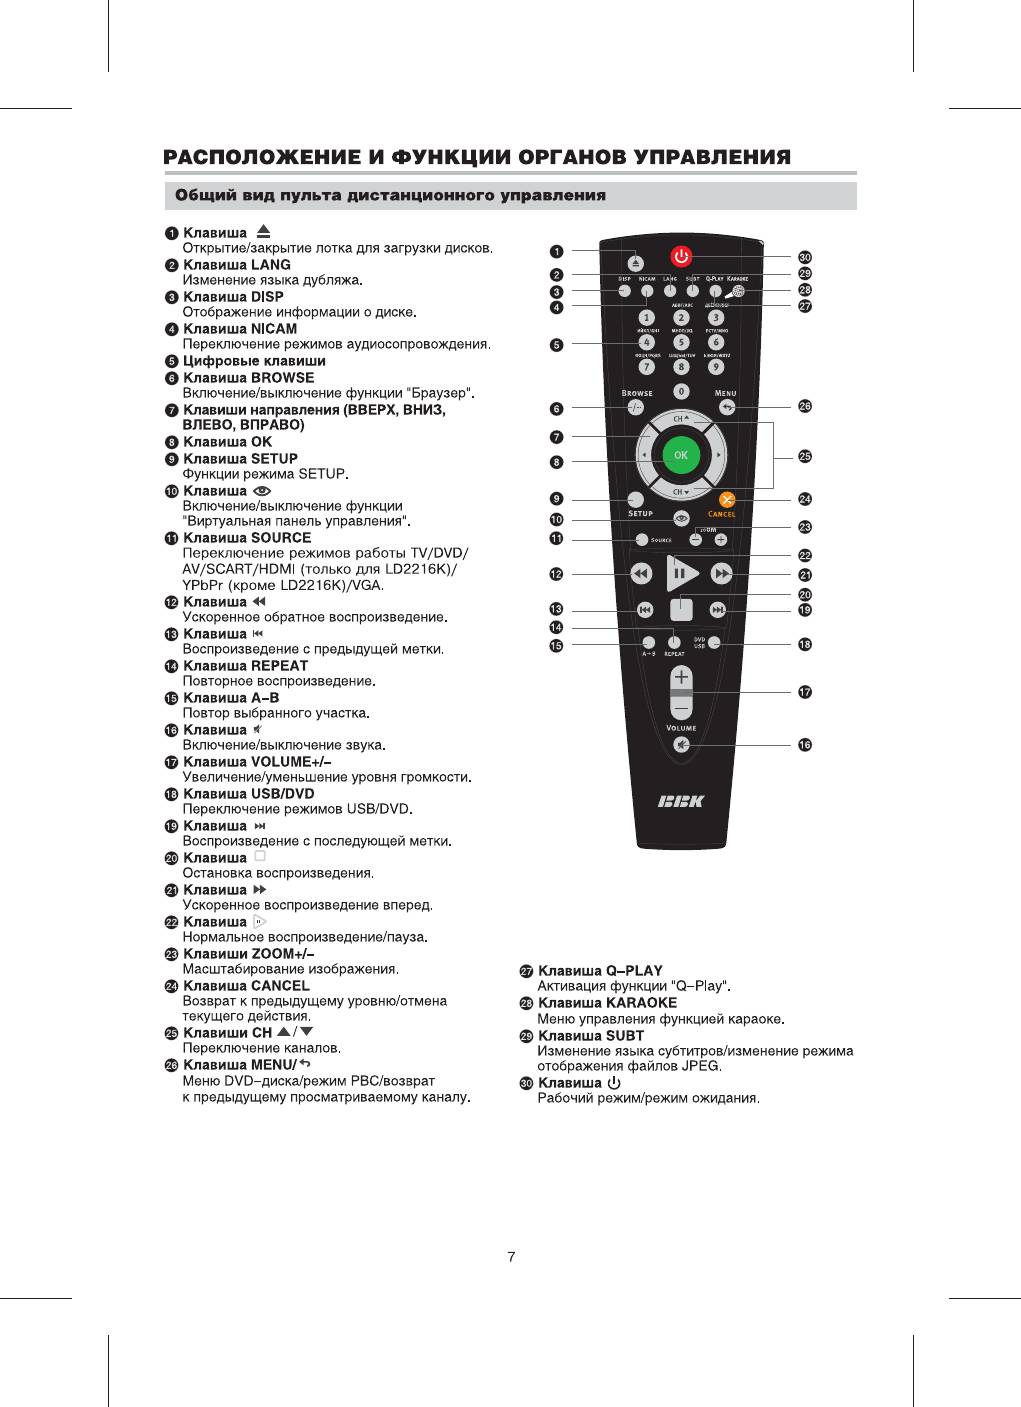 Телевизор bbk инструкция